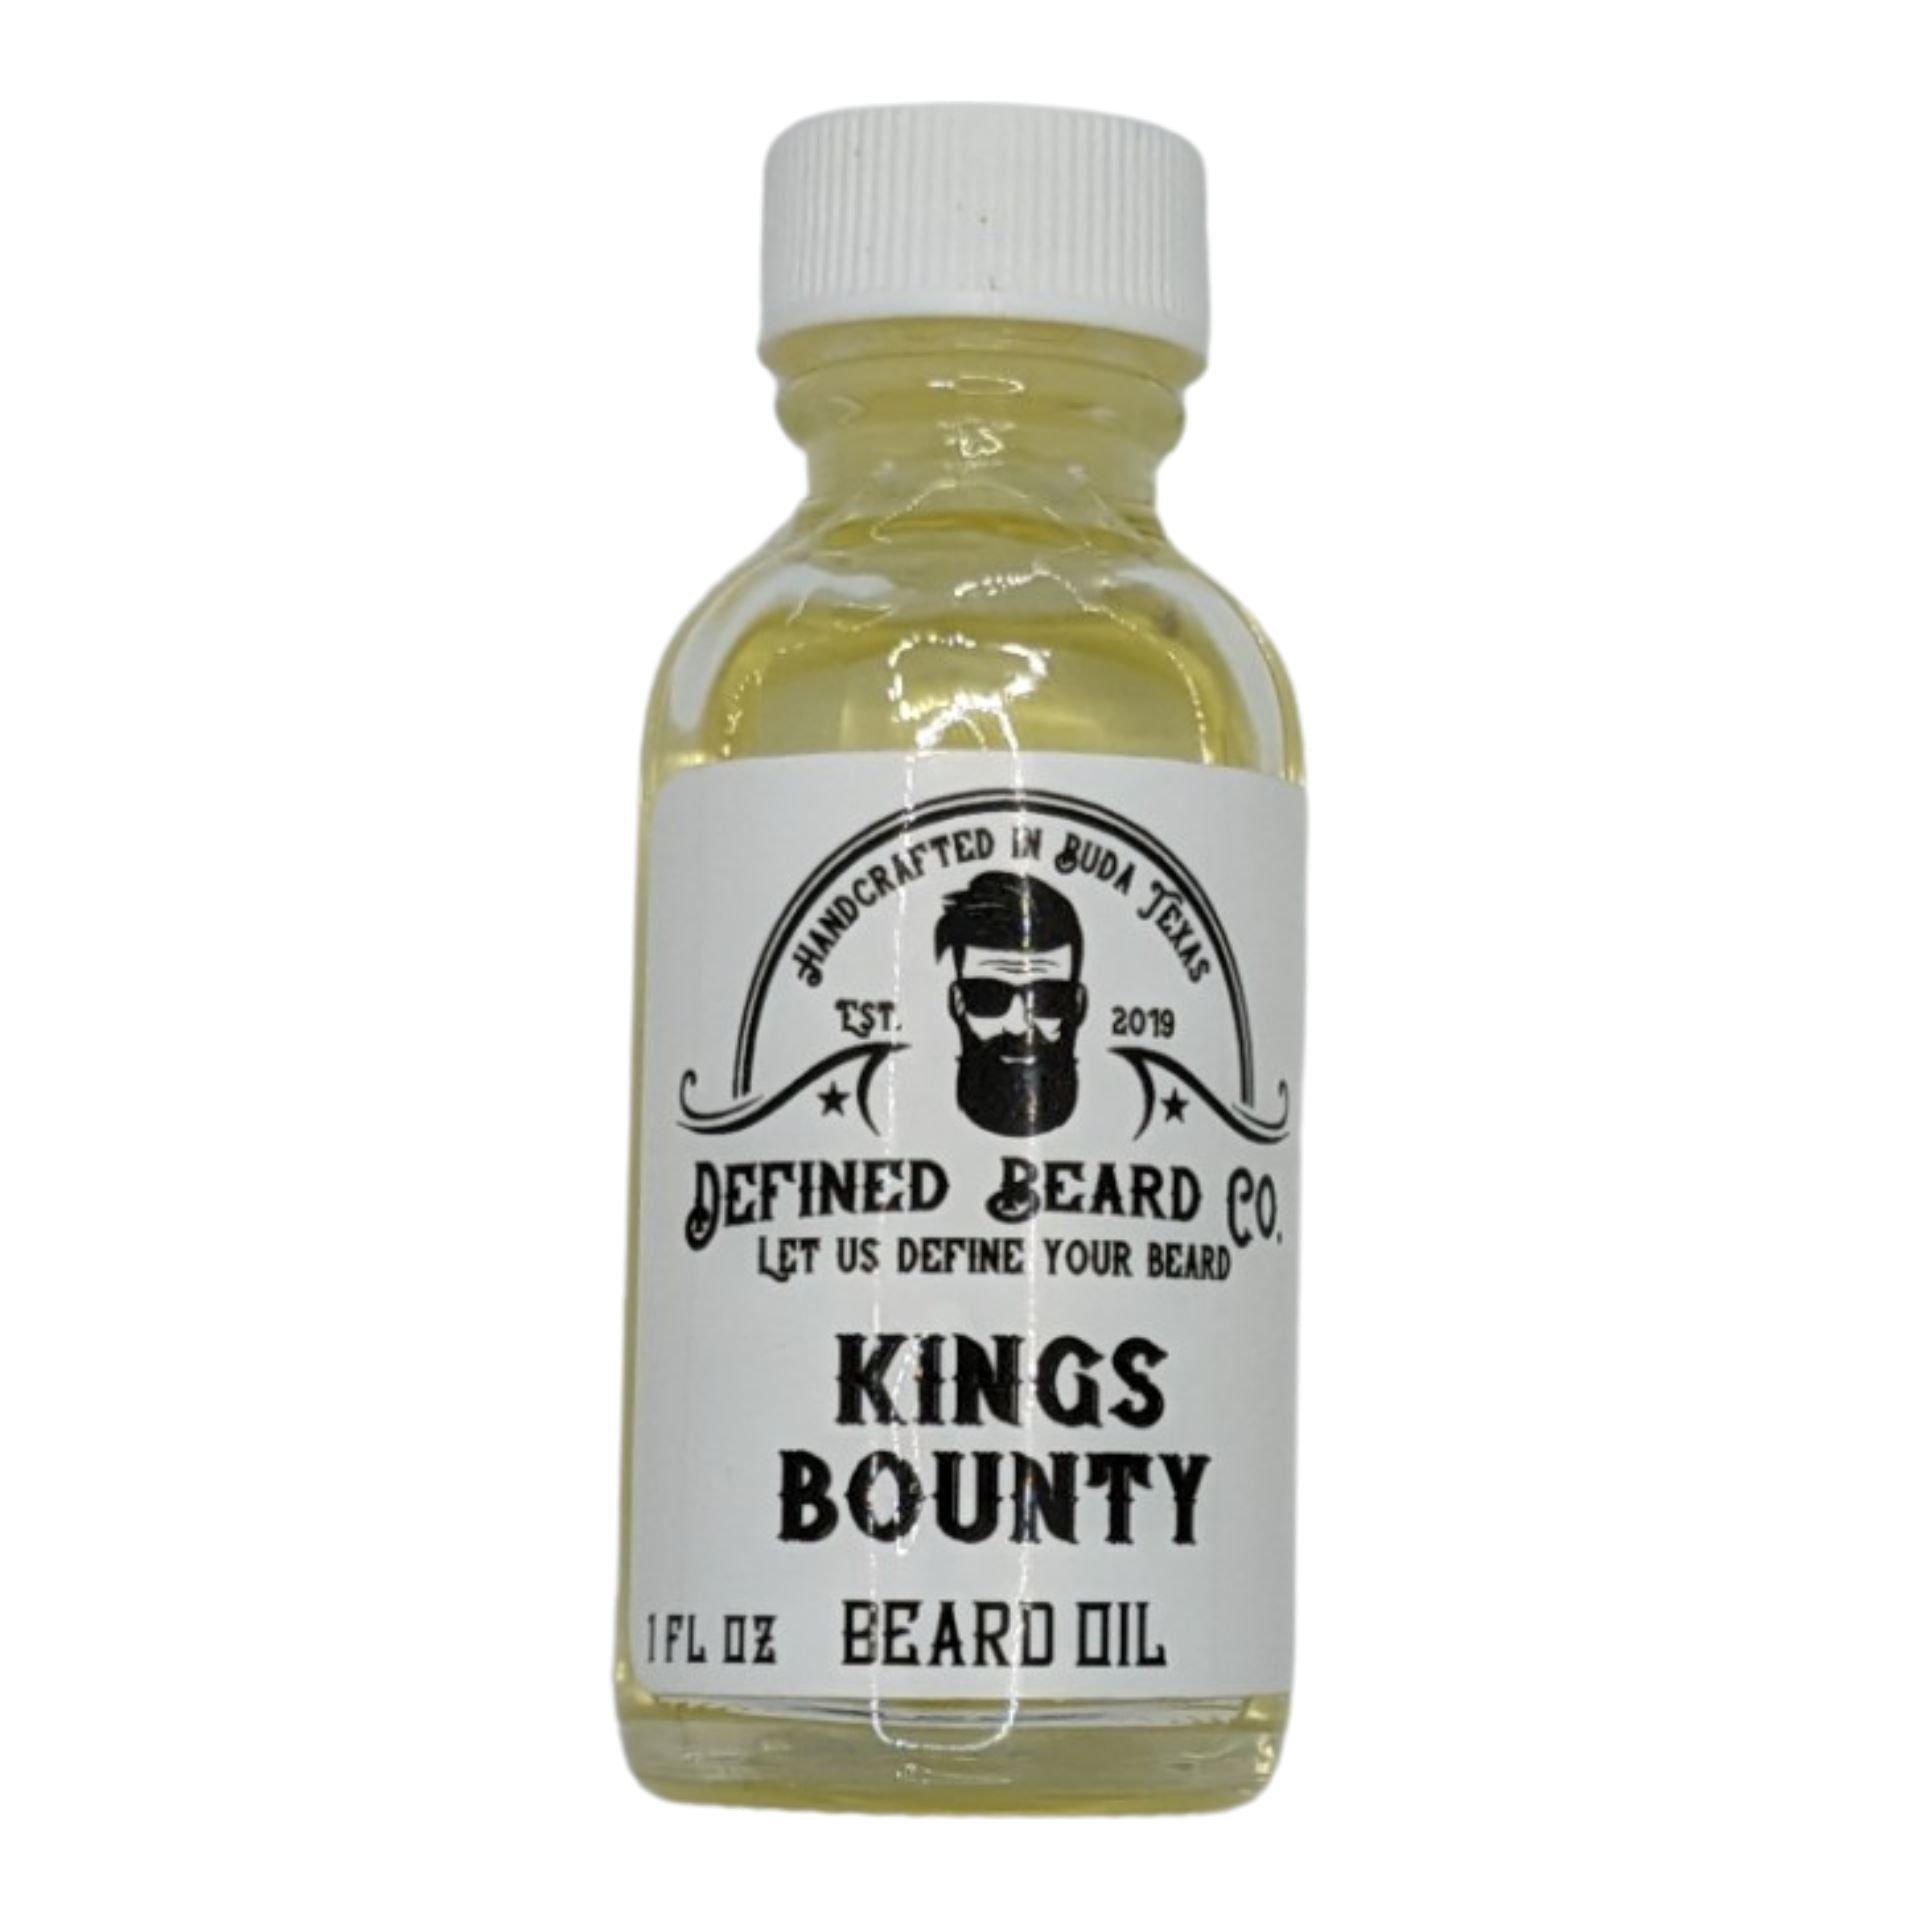 Kings Bounty Beard Oil - by Defined Beard Co. (Pre-Owned)